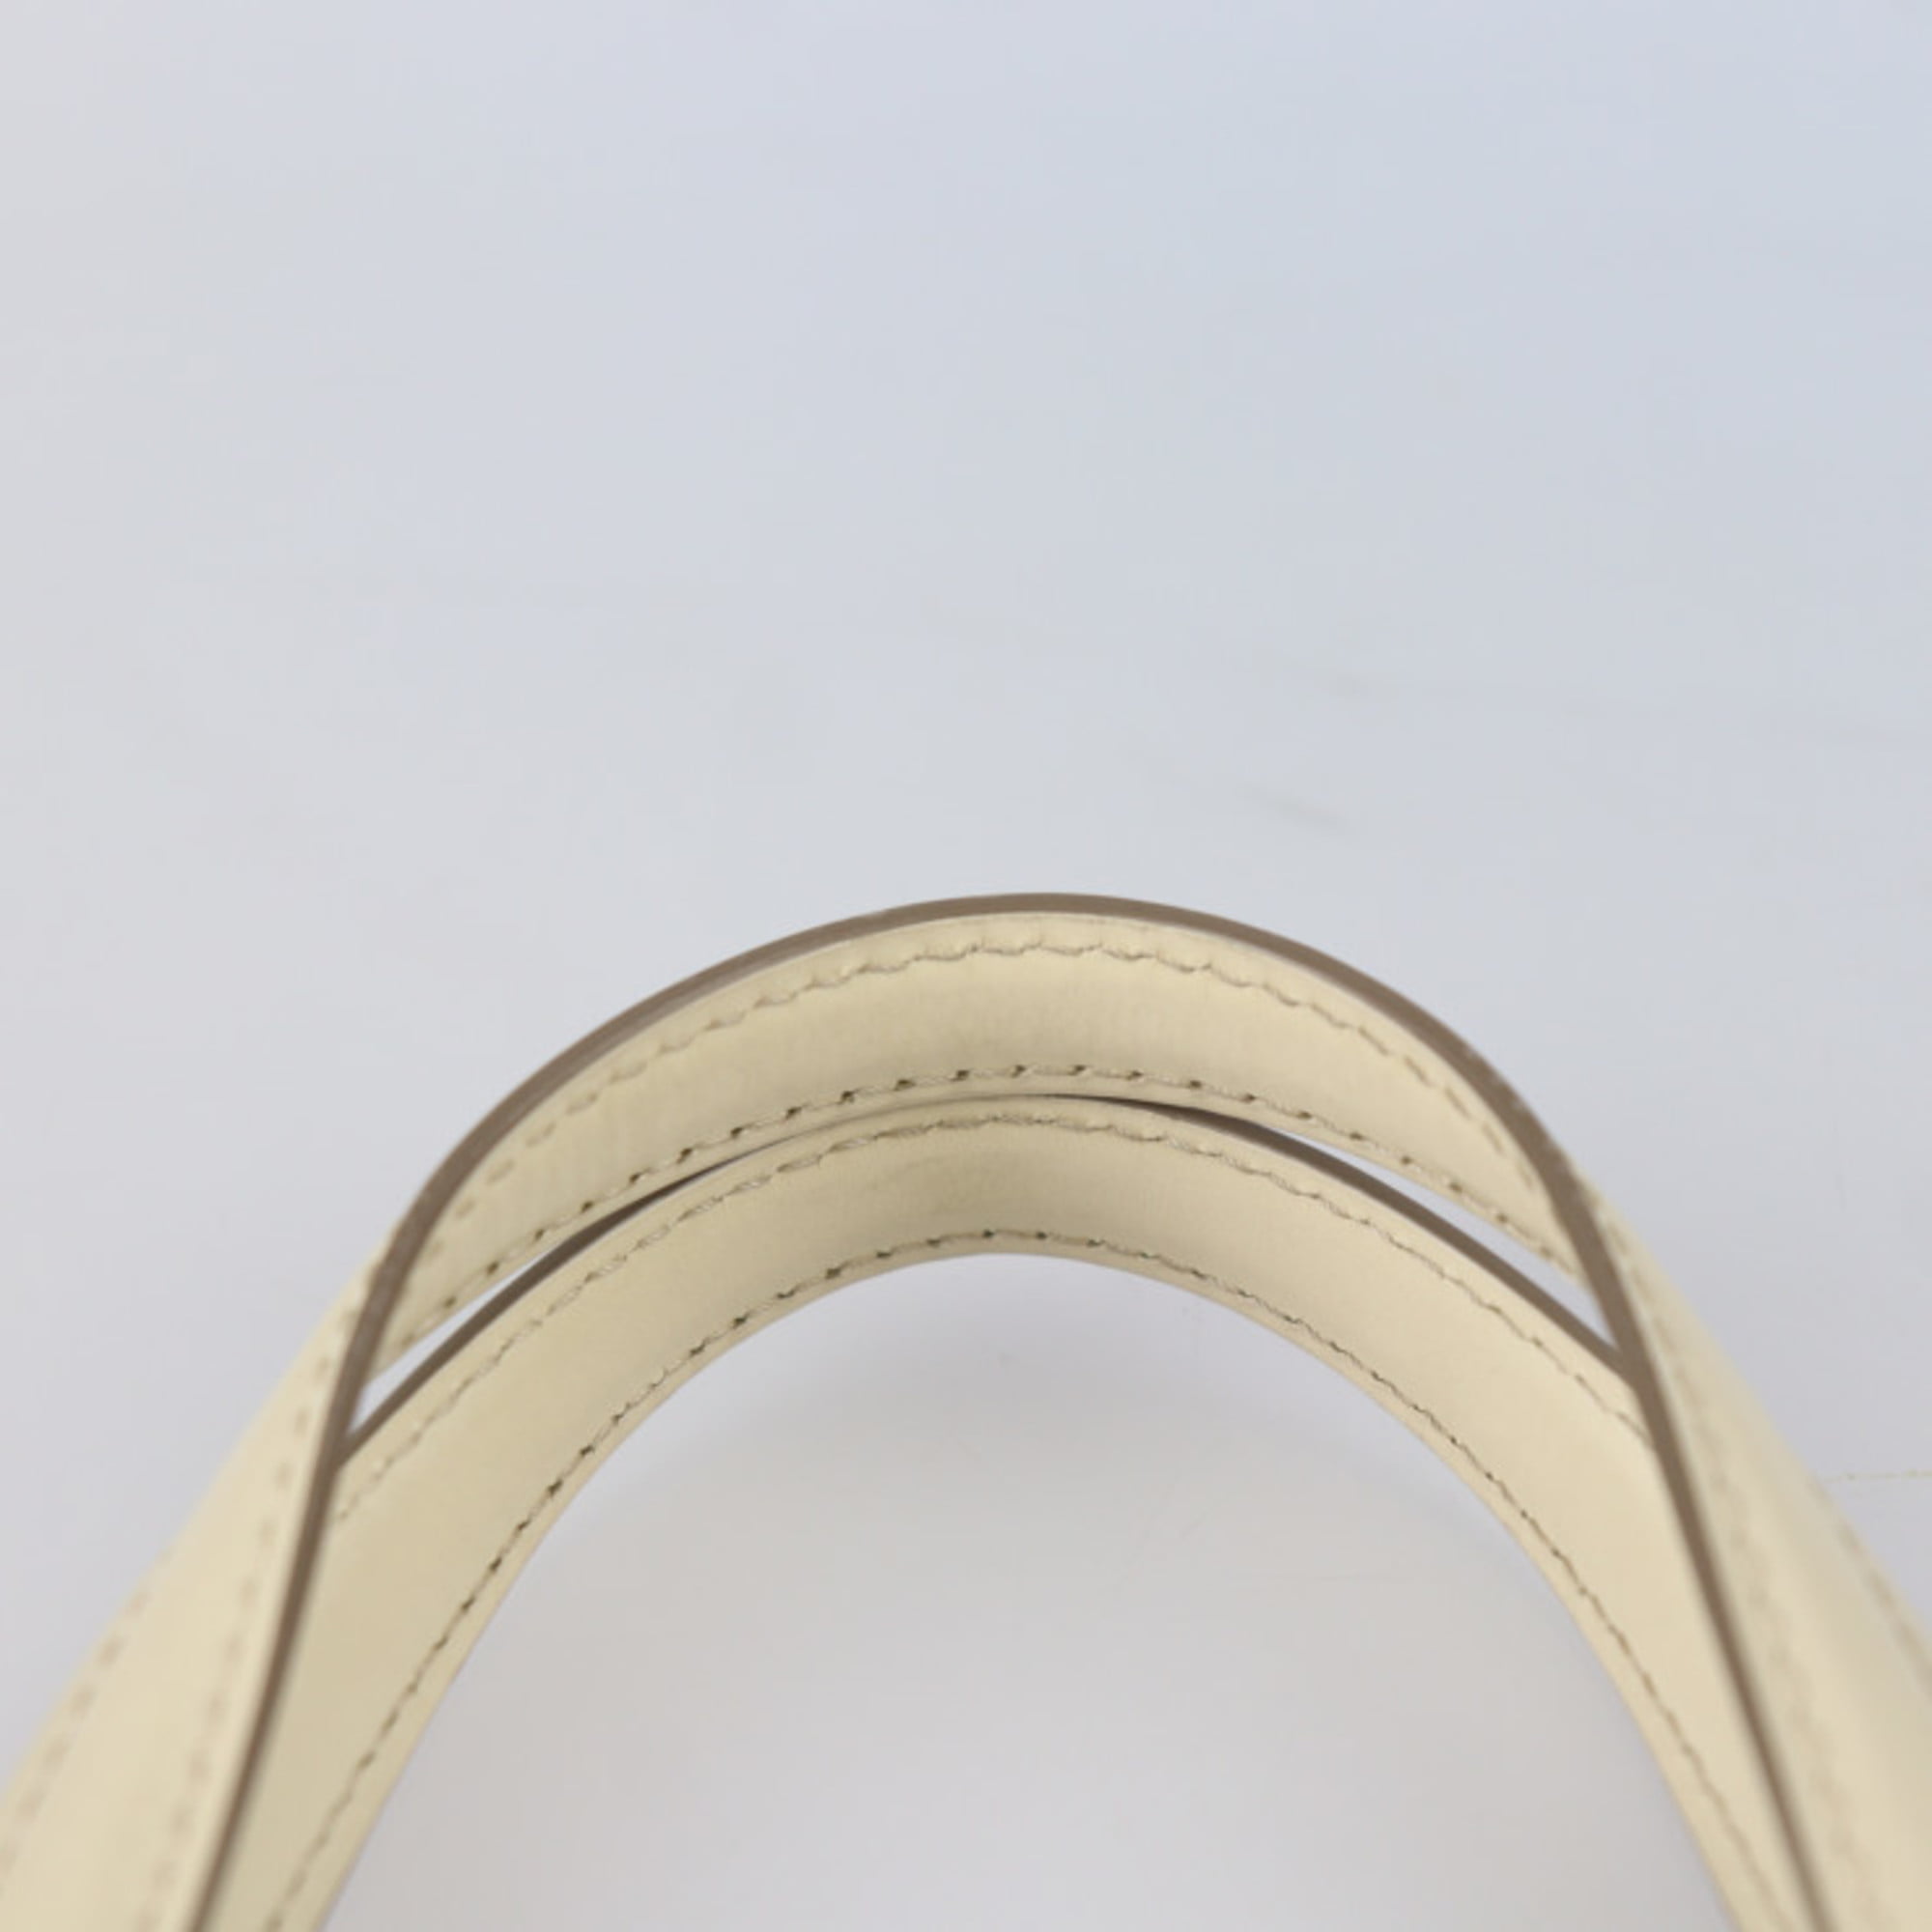 Louis Vuitton Arch Crossbody Bag